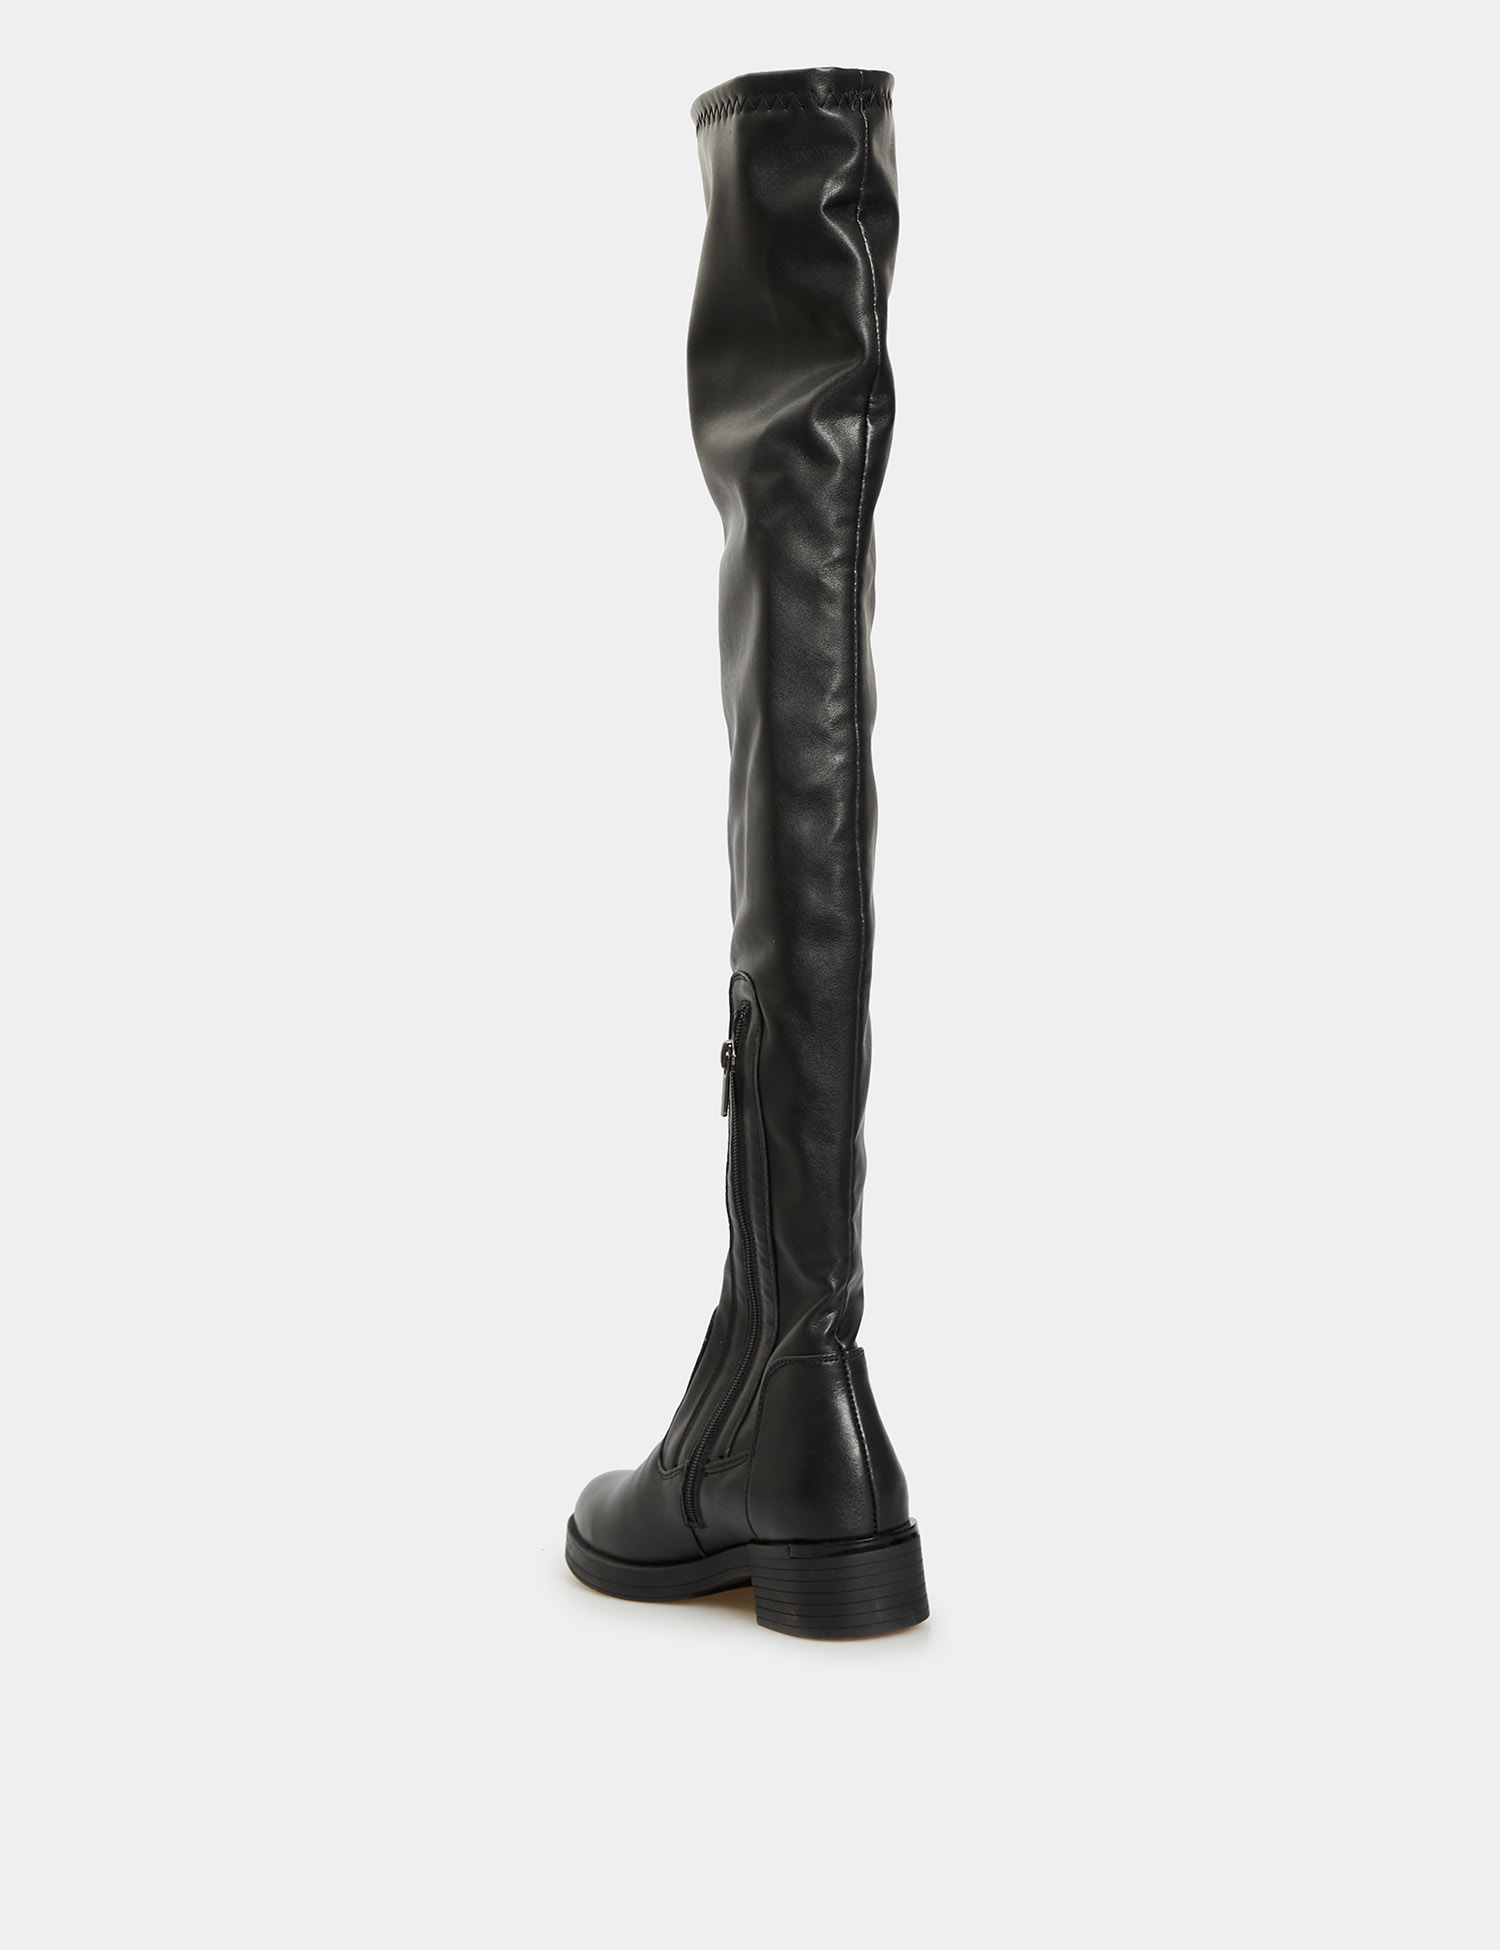 Картинка Жіночі чорні шкіряні чоботи